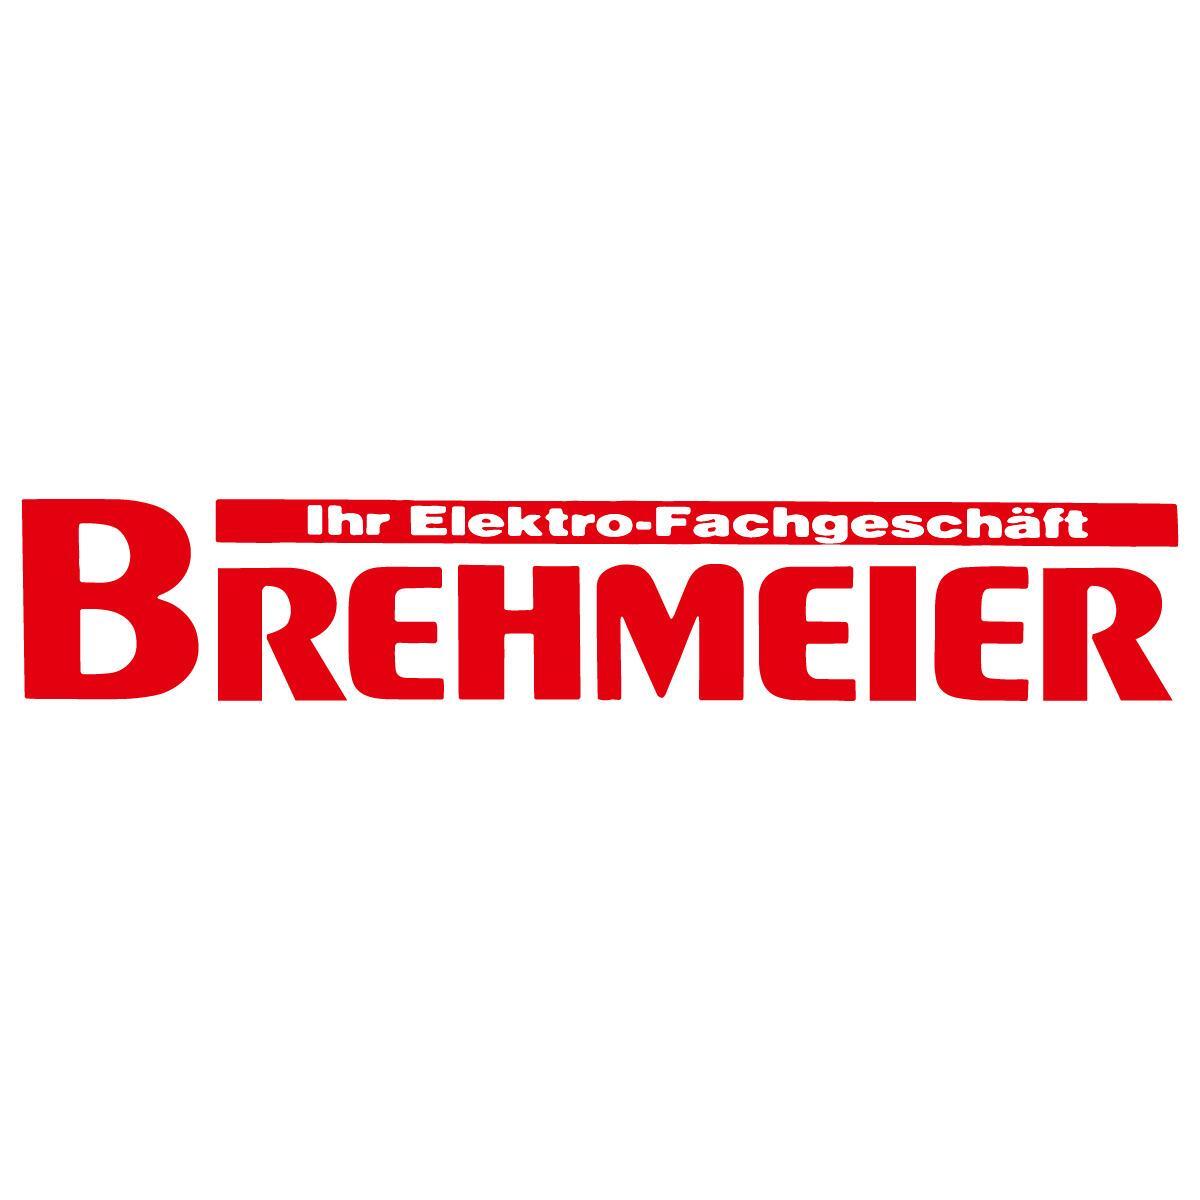 Heinrich Brehmeier Elektro-Fachgeschäft  